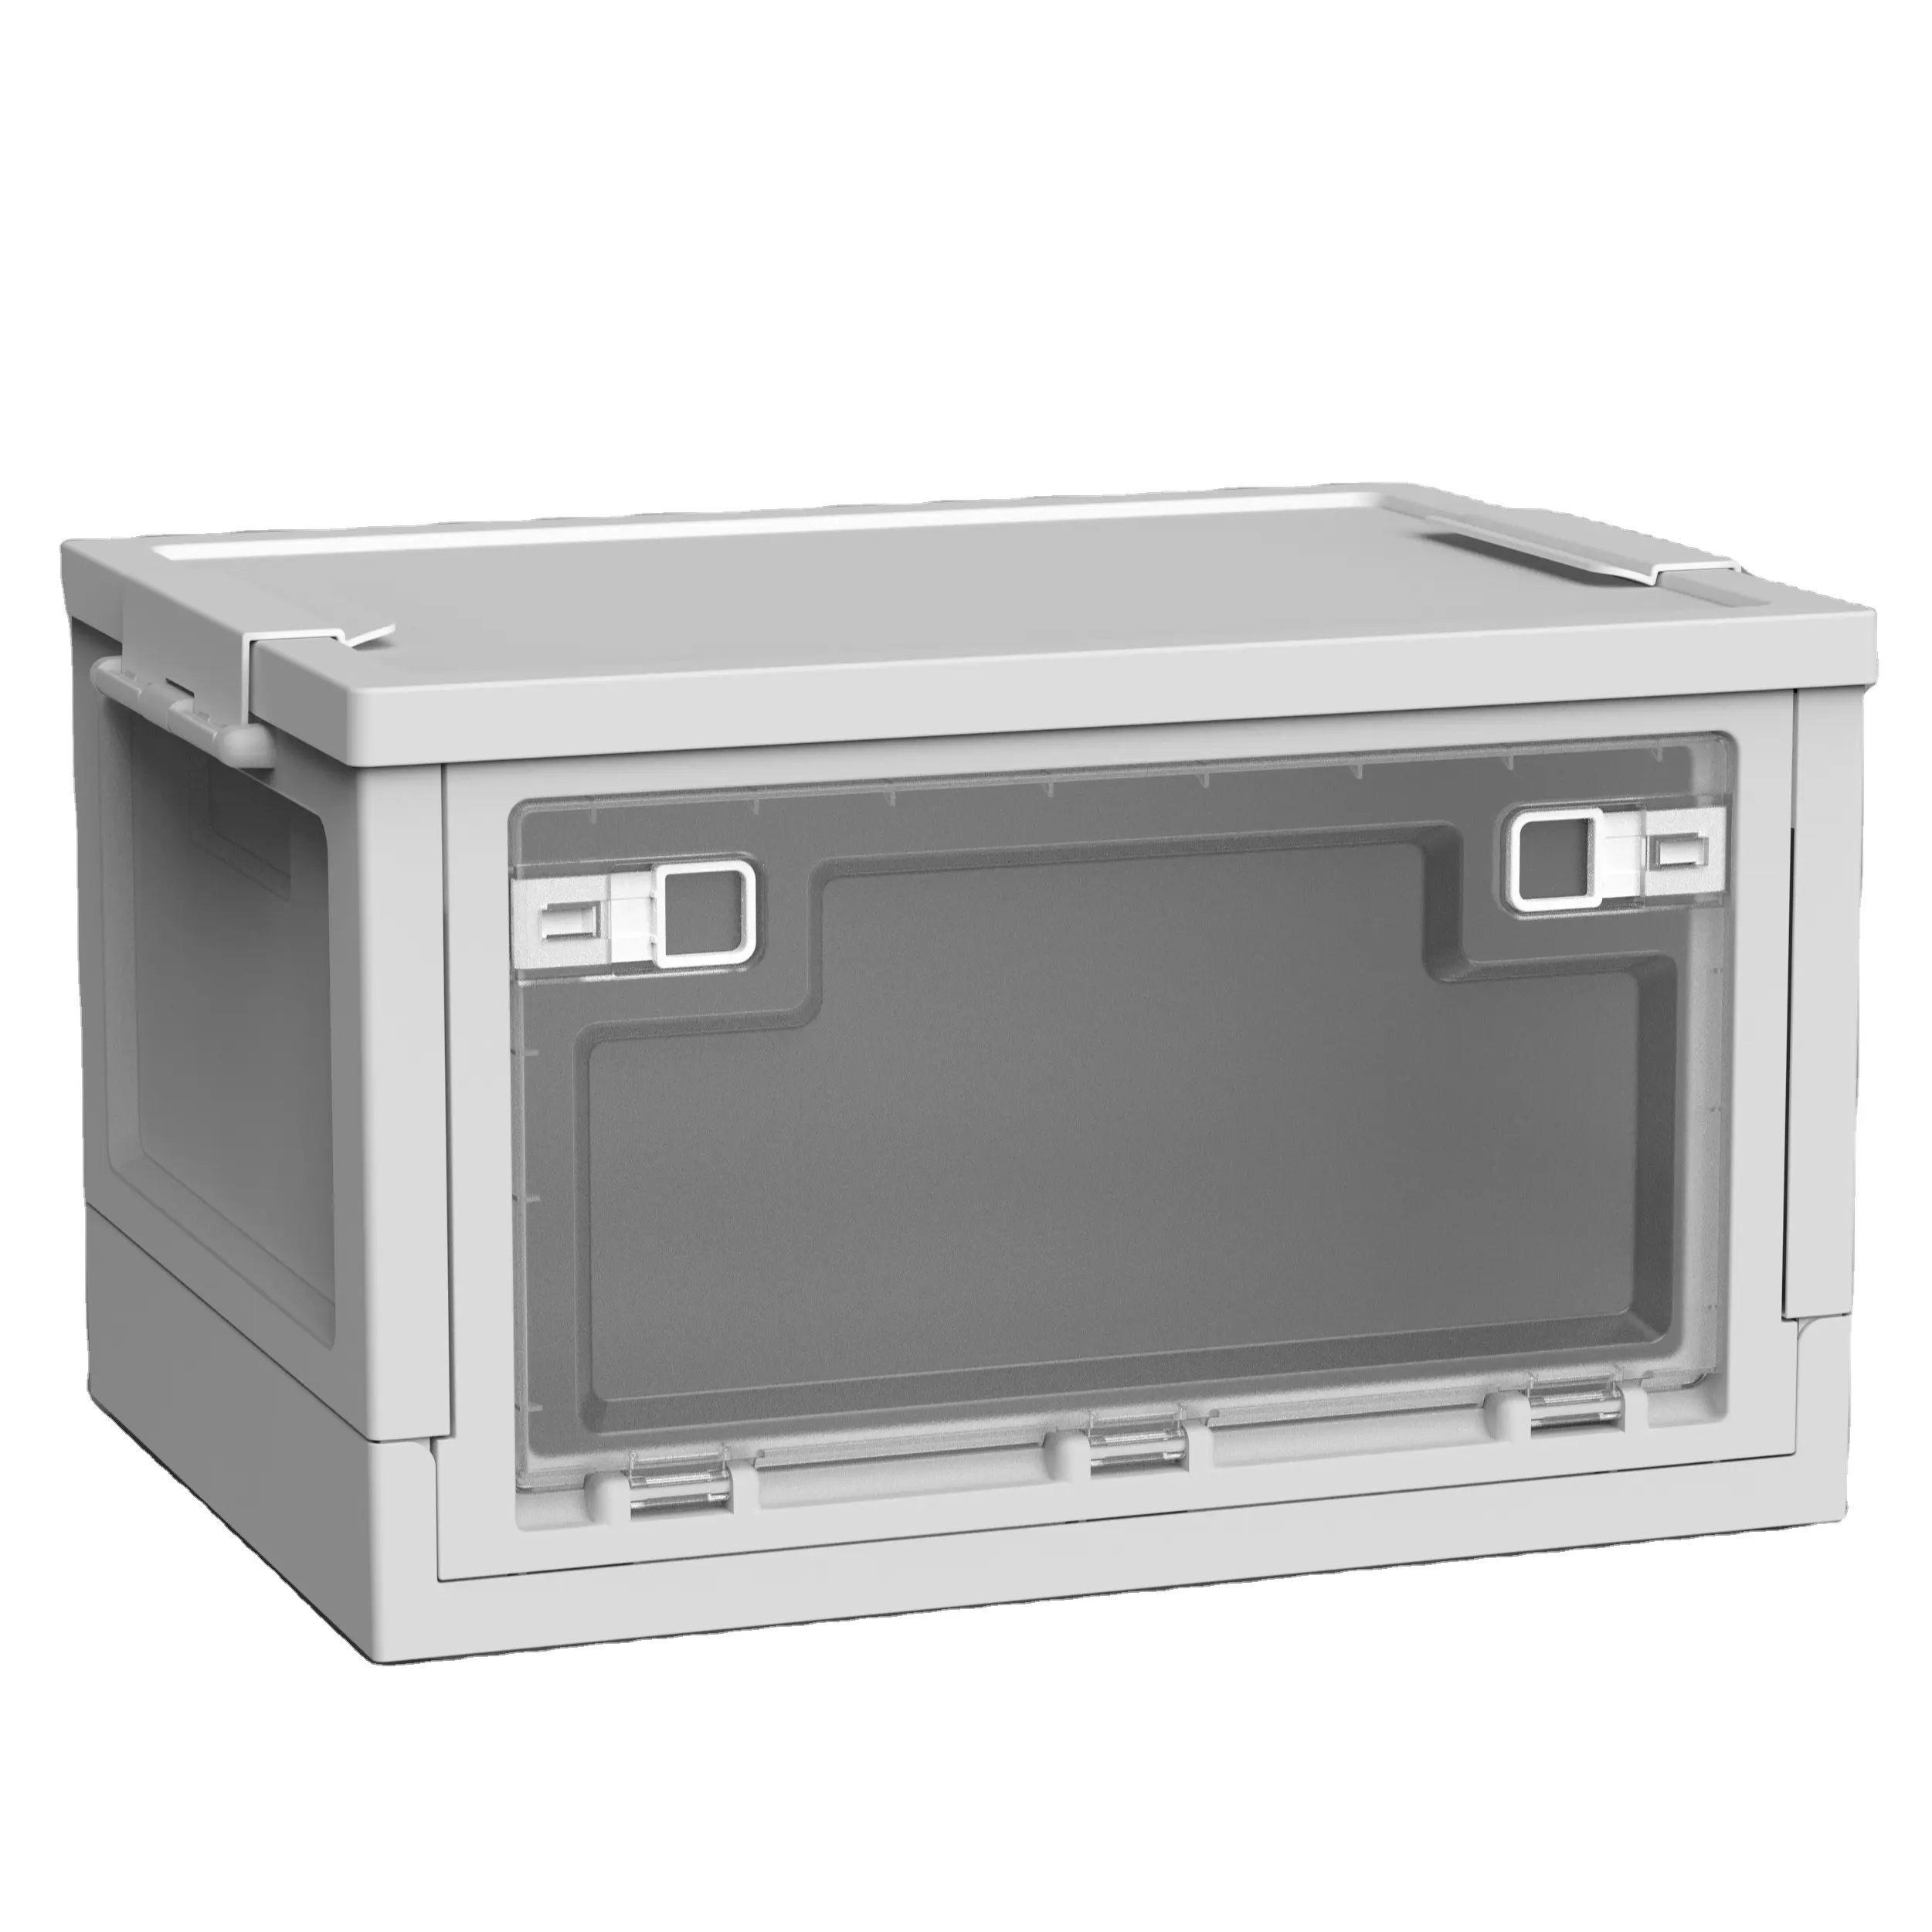 Cajas de almacenamiento plegables, caja de pestillo apilable, contenedor de bloqueo duradero, caja de plástico plegable con apertura delantera